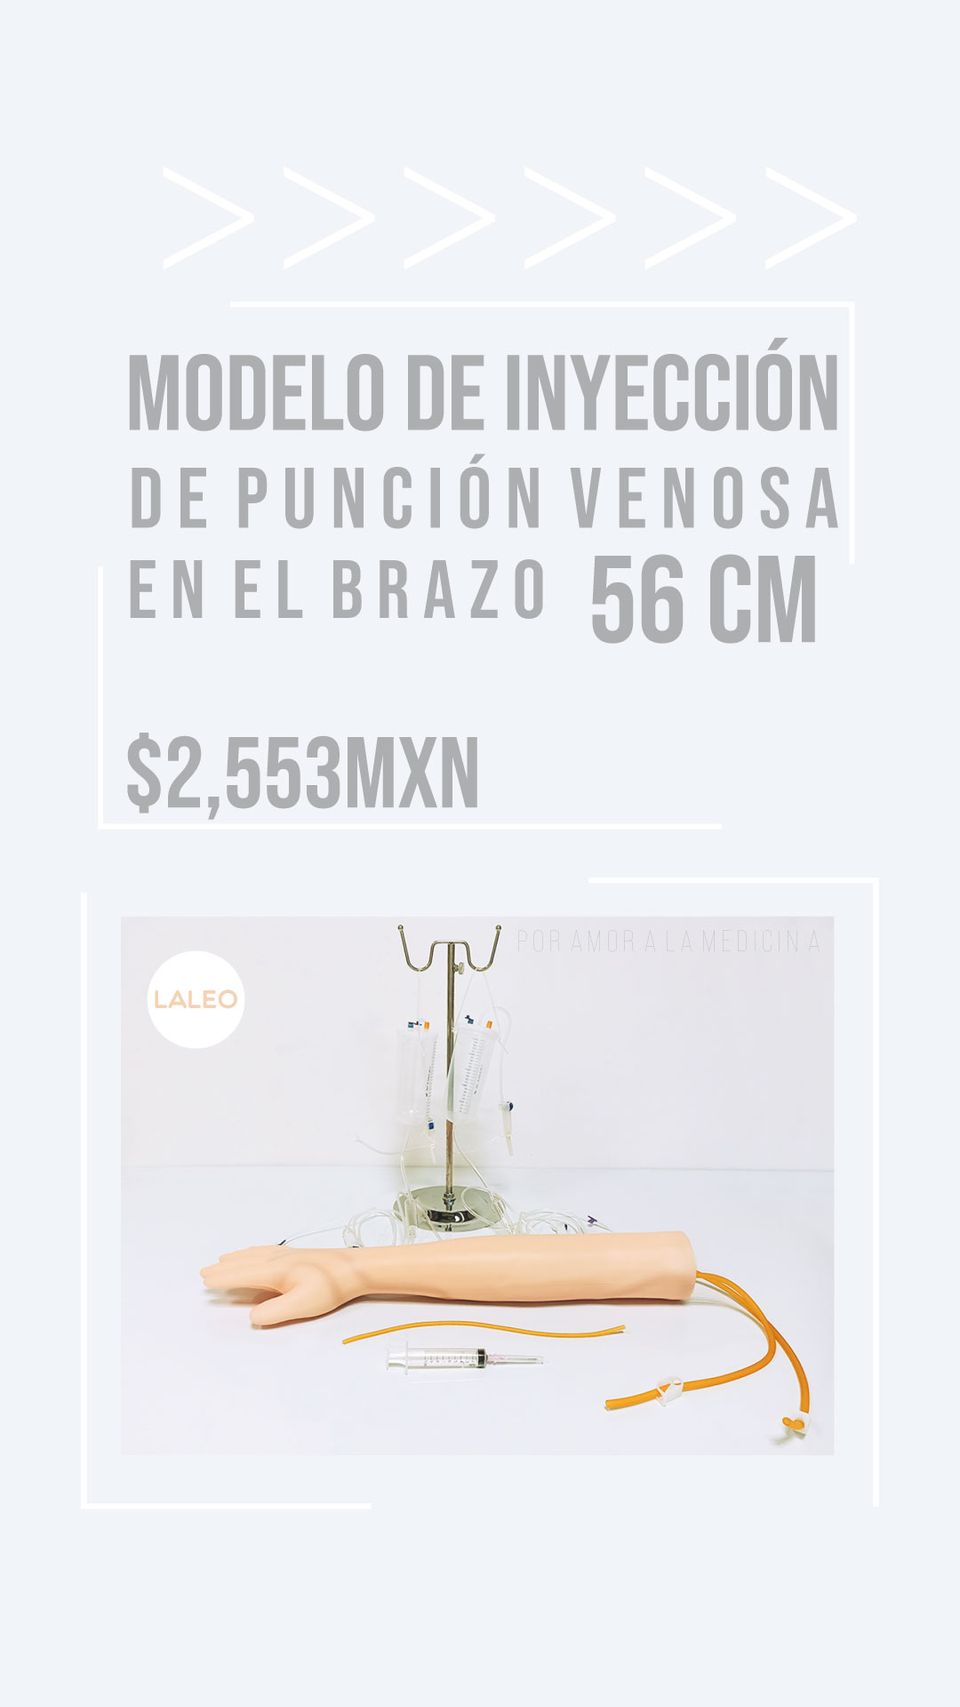 Modelo de inyección de punción venosa en el brazo 56 cm